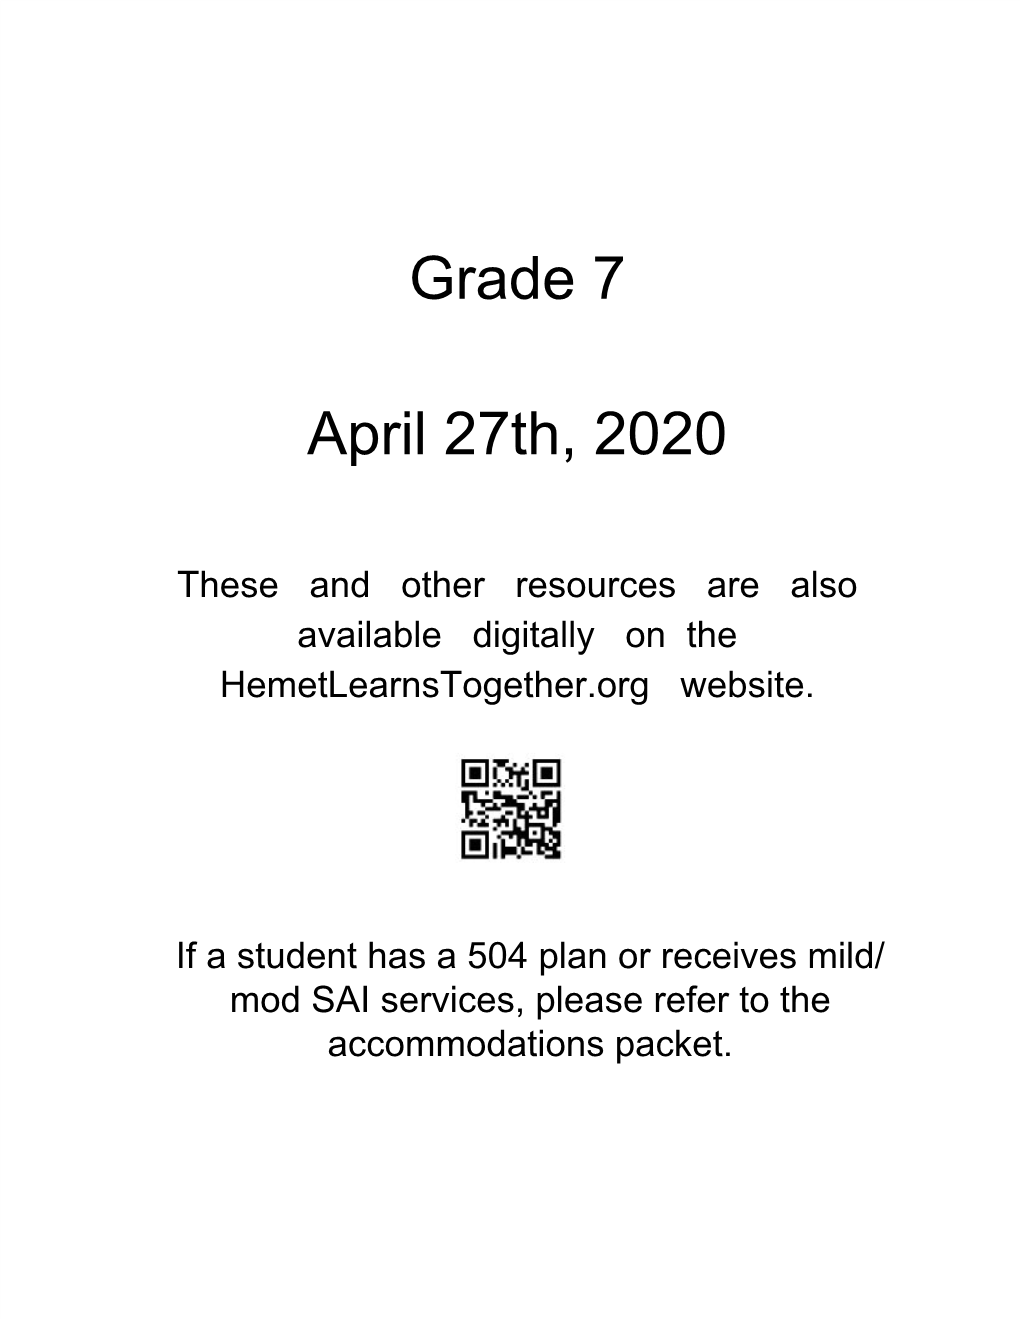 Grade 7 April 27Th, 2020